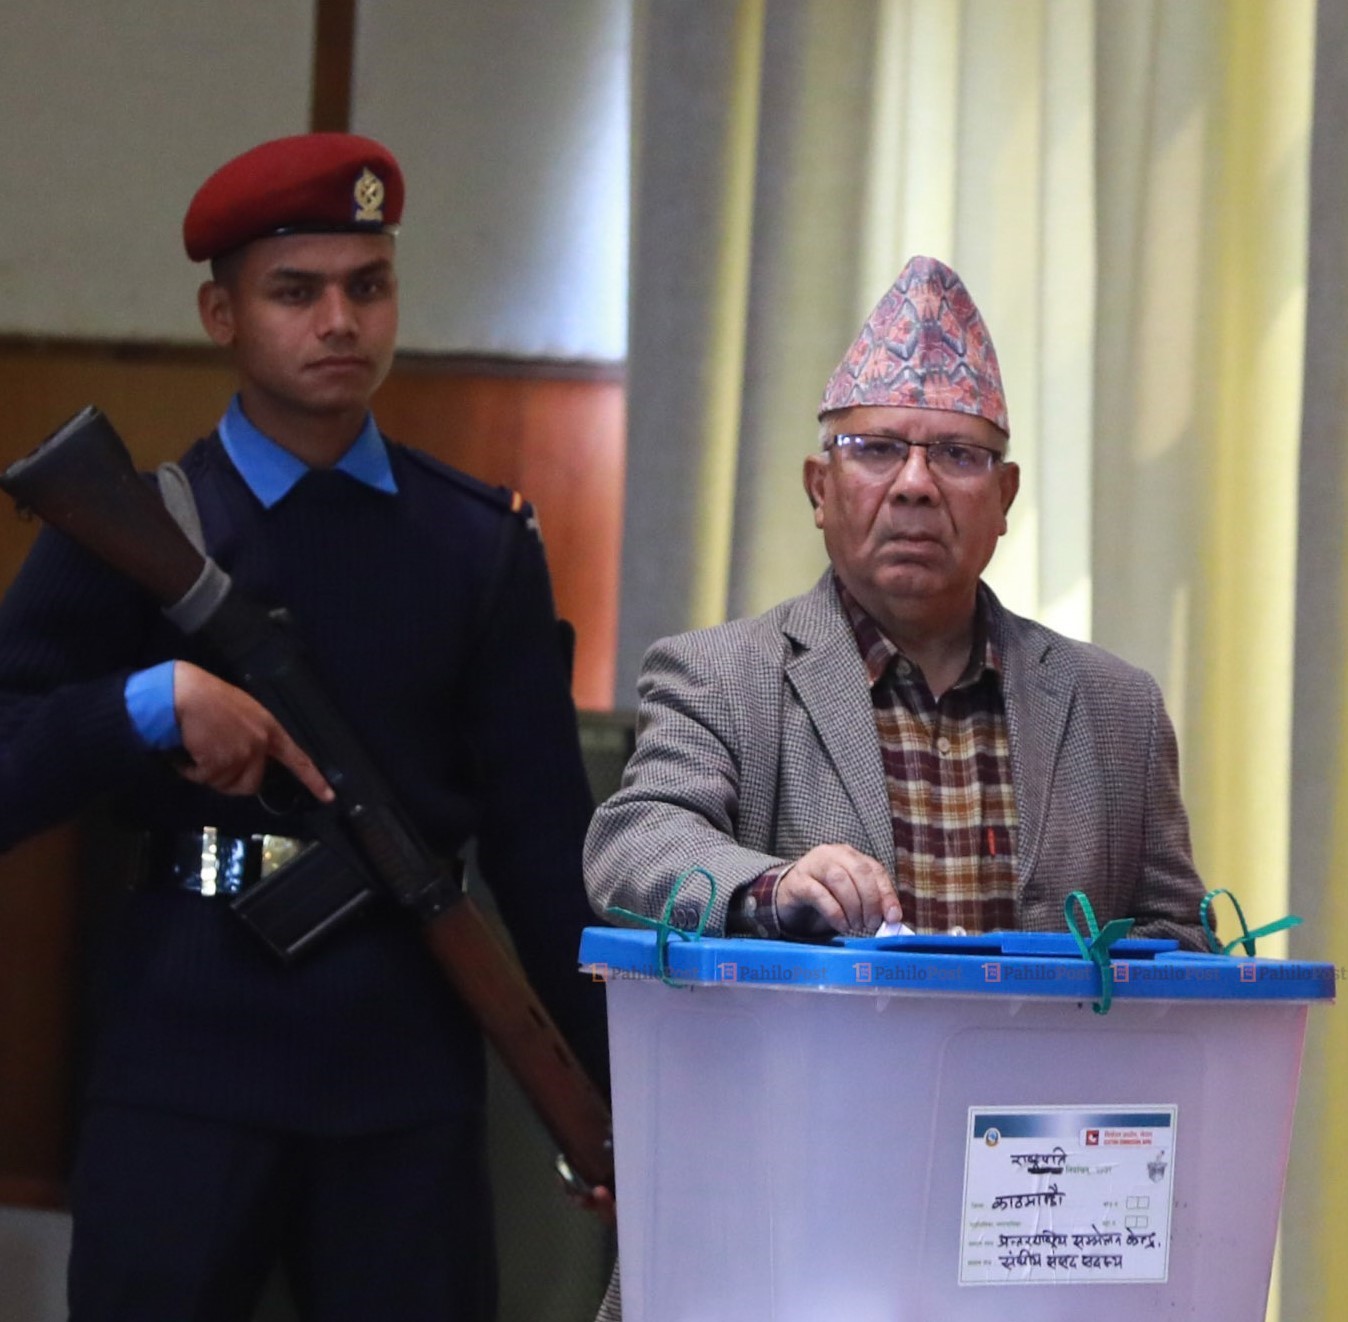  राष्ट्रपति निर्वाचनमा अध्यक्ष नेपालद्वारा मतदान  